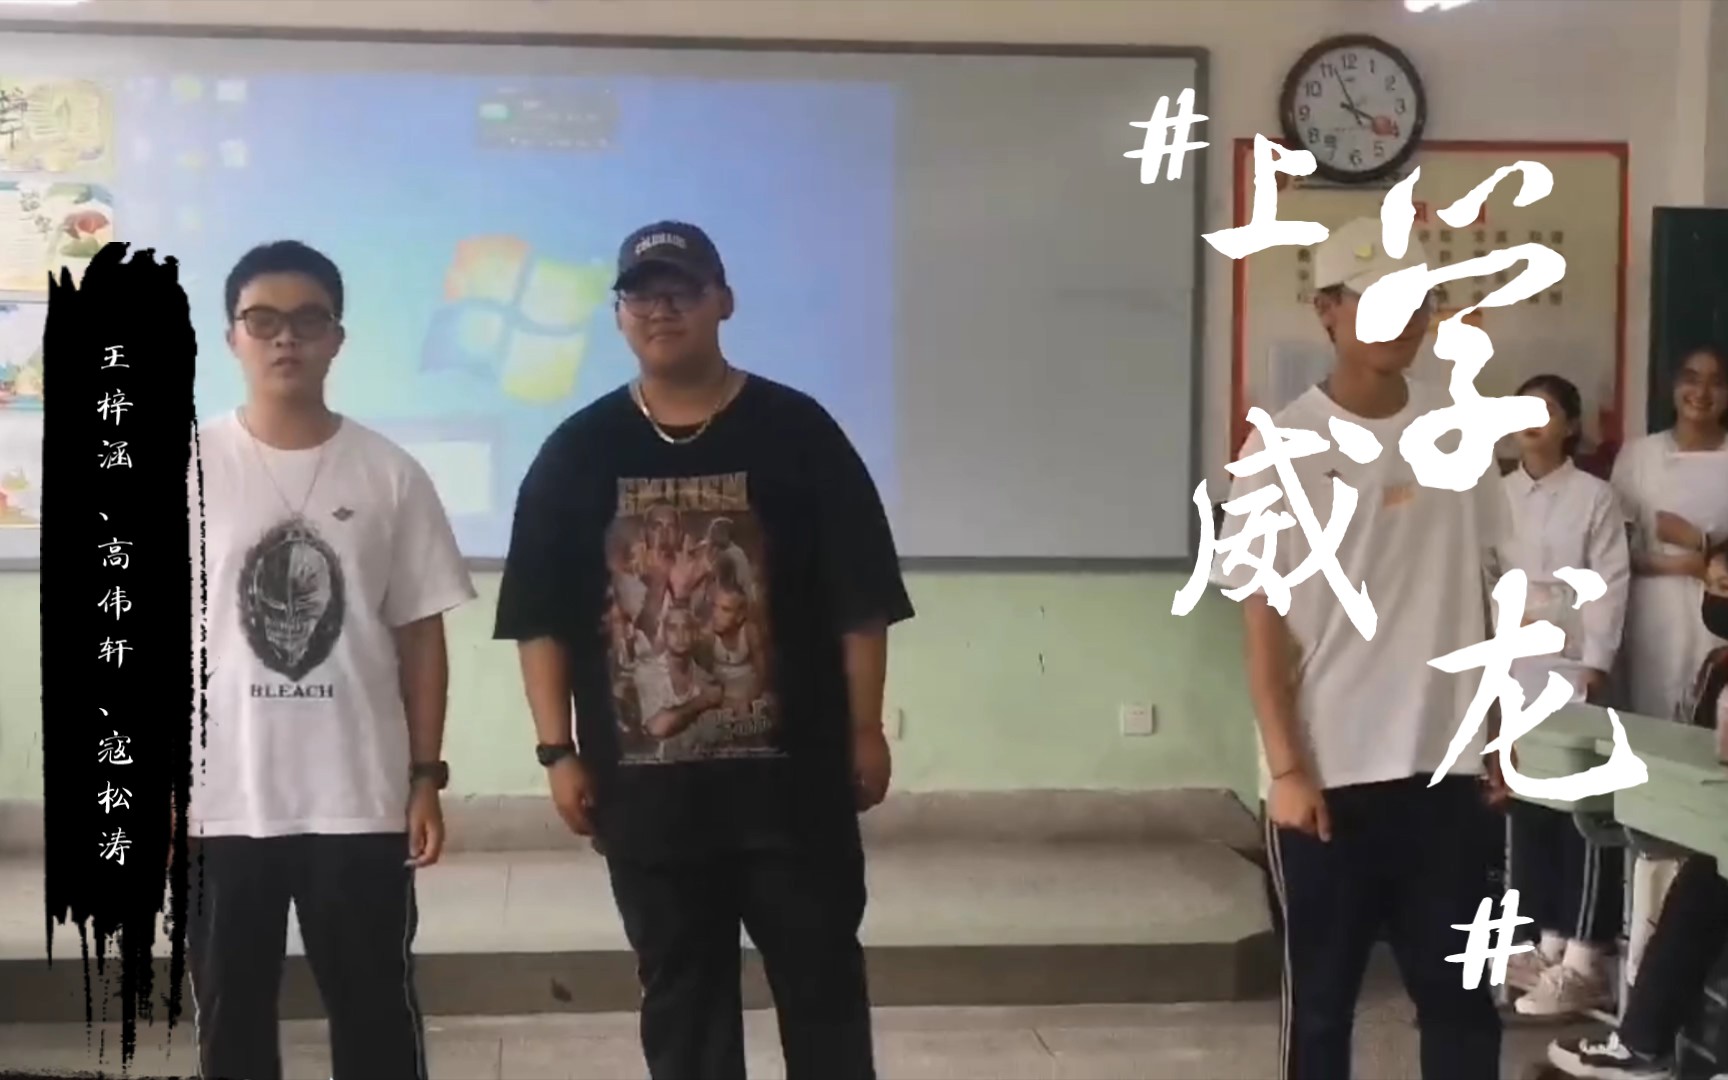 八年级3班端午诗会 《上学威龙》完整版视频表演者:王梓涵、高伟轩、寇松涛